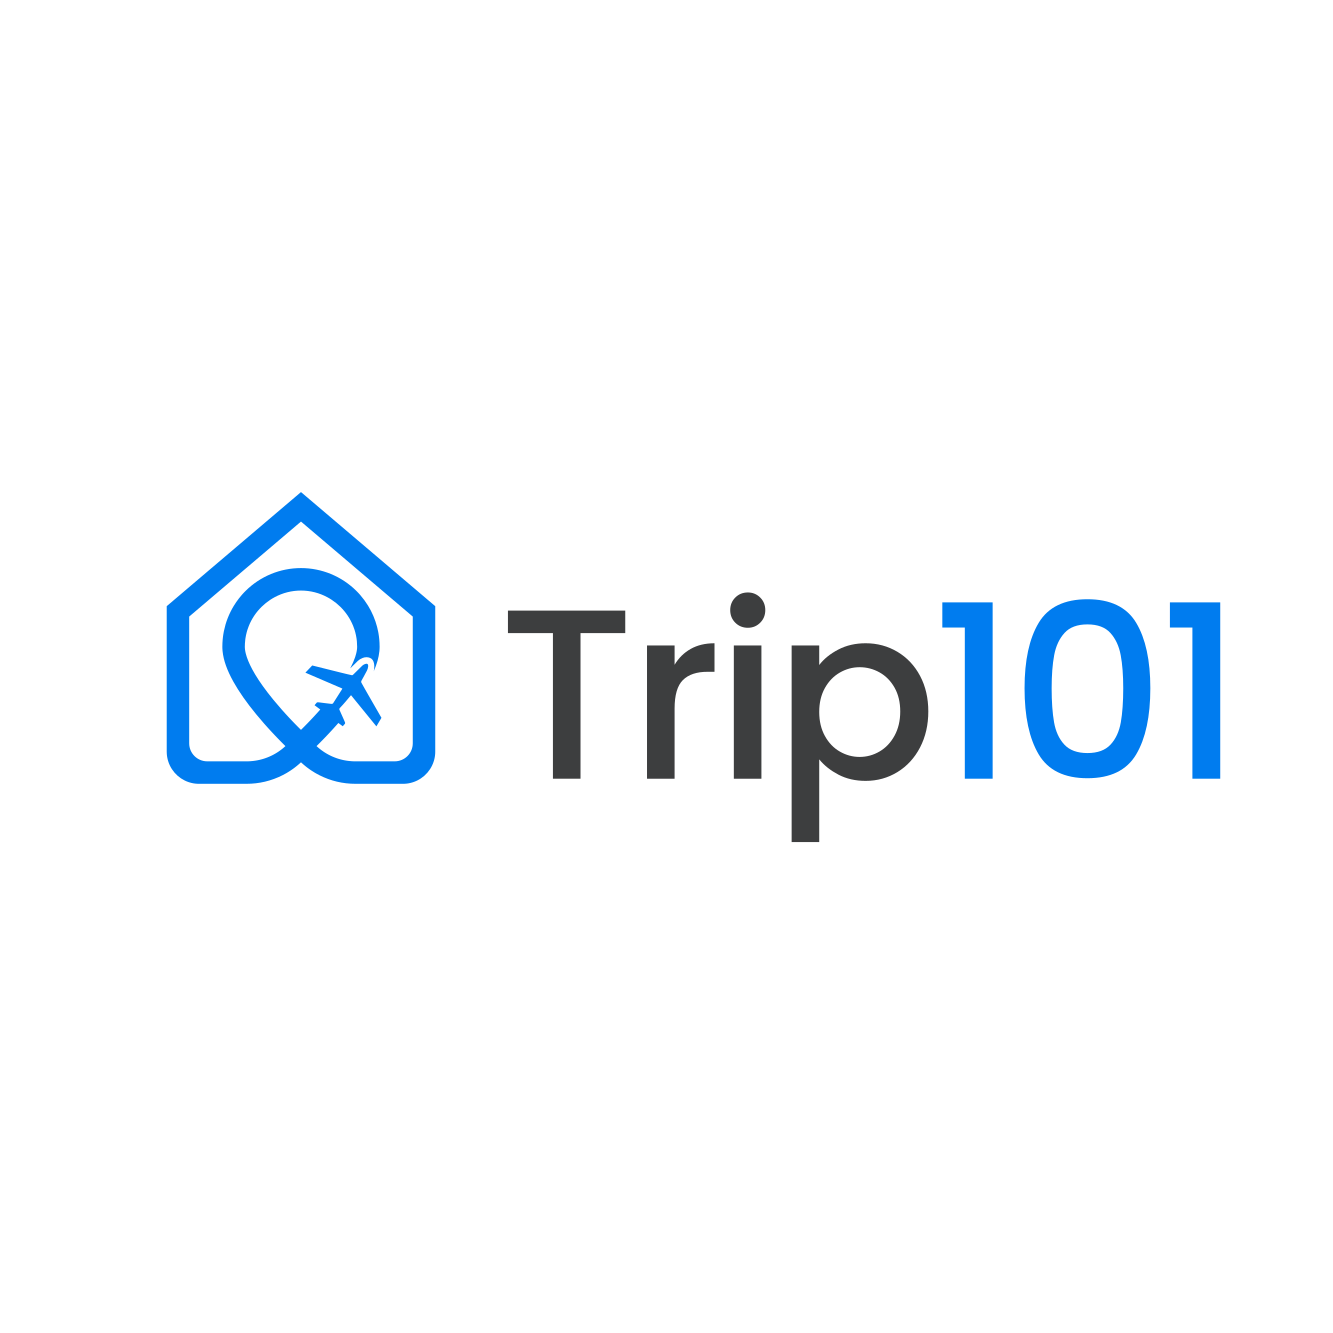 trip101 logo